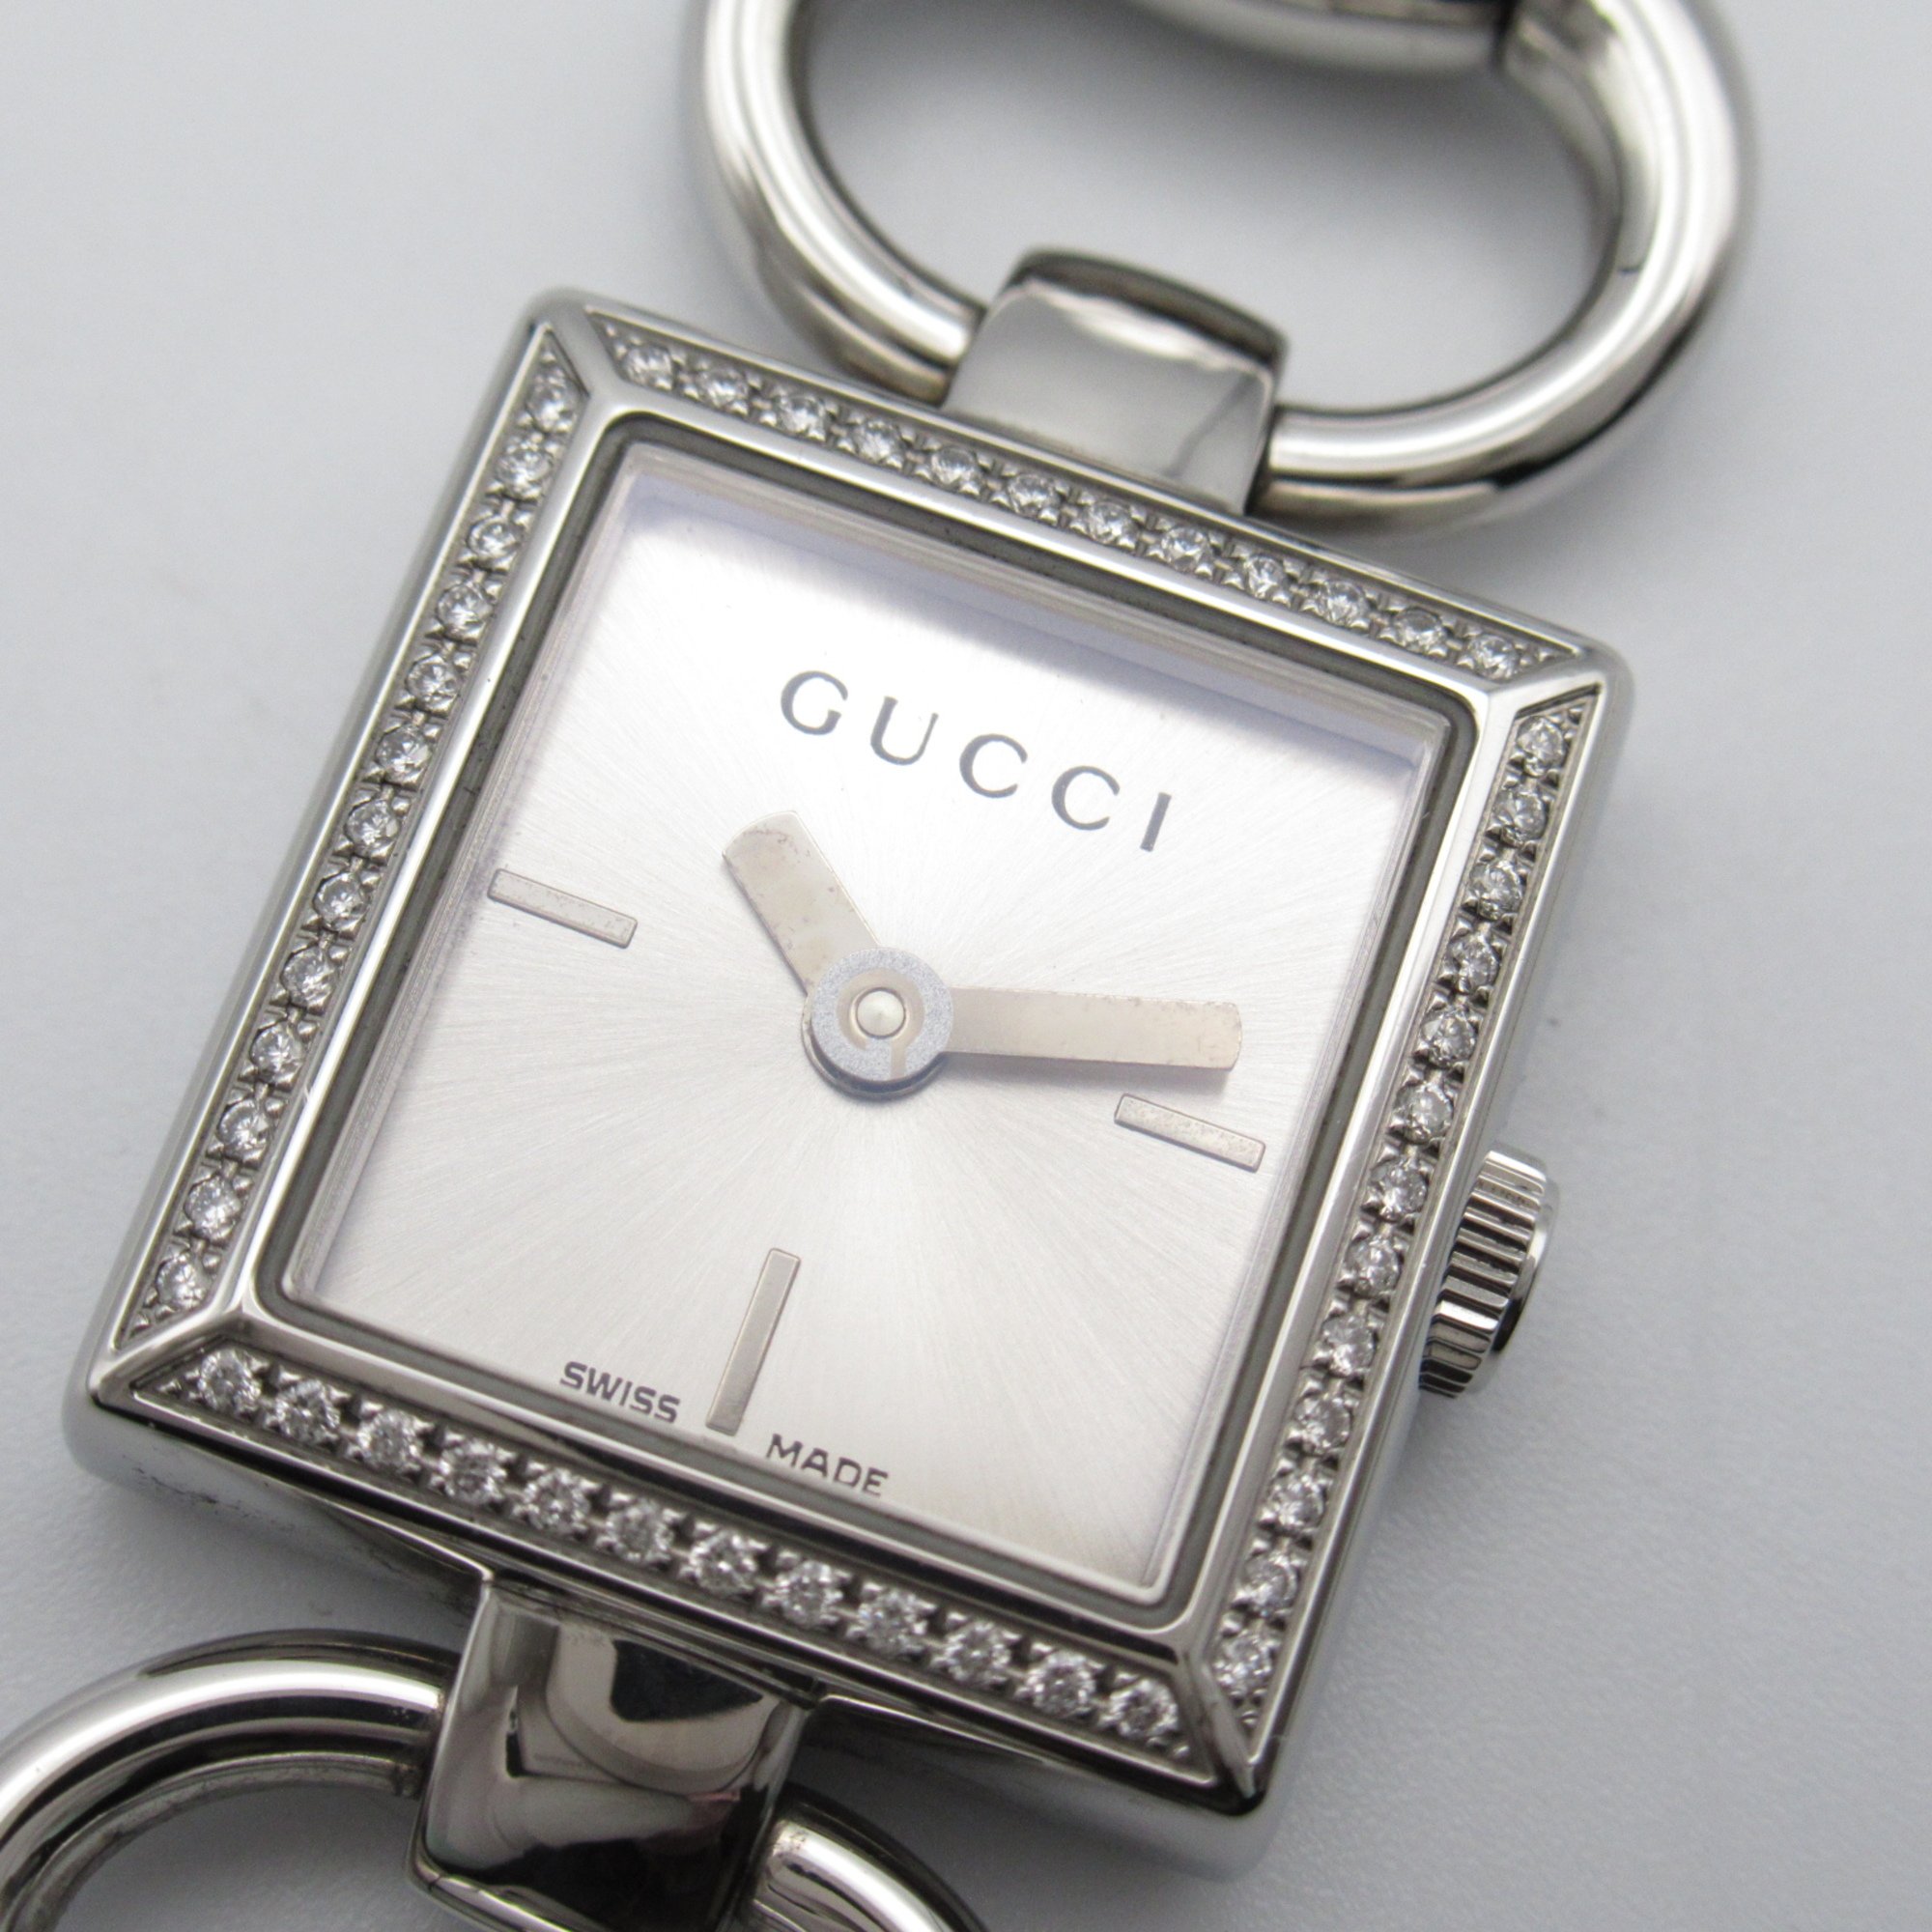 GUCCI Watch Wrist Watch 120.00 Quartz Silver  Stainless Steel 120